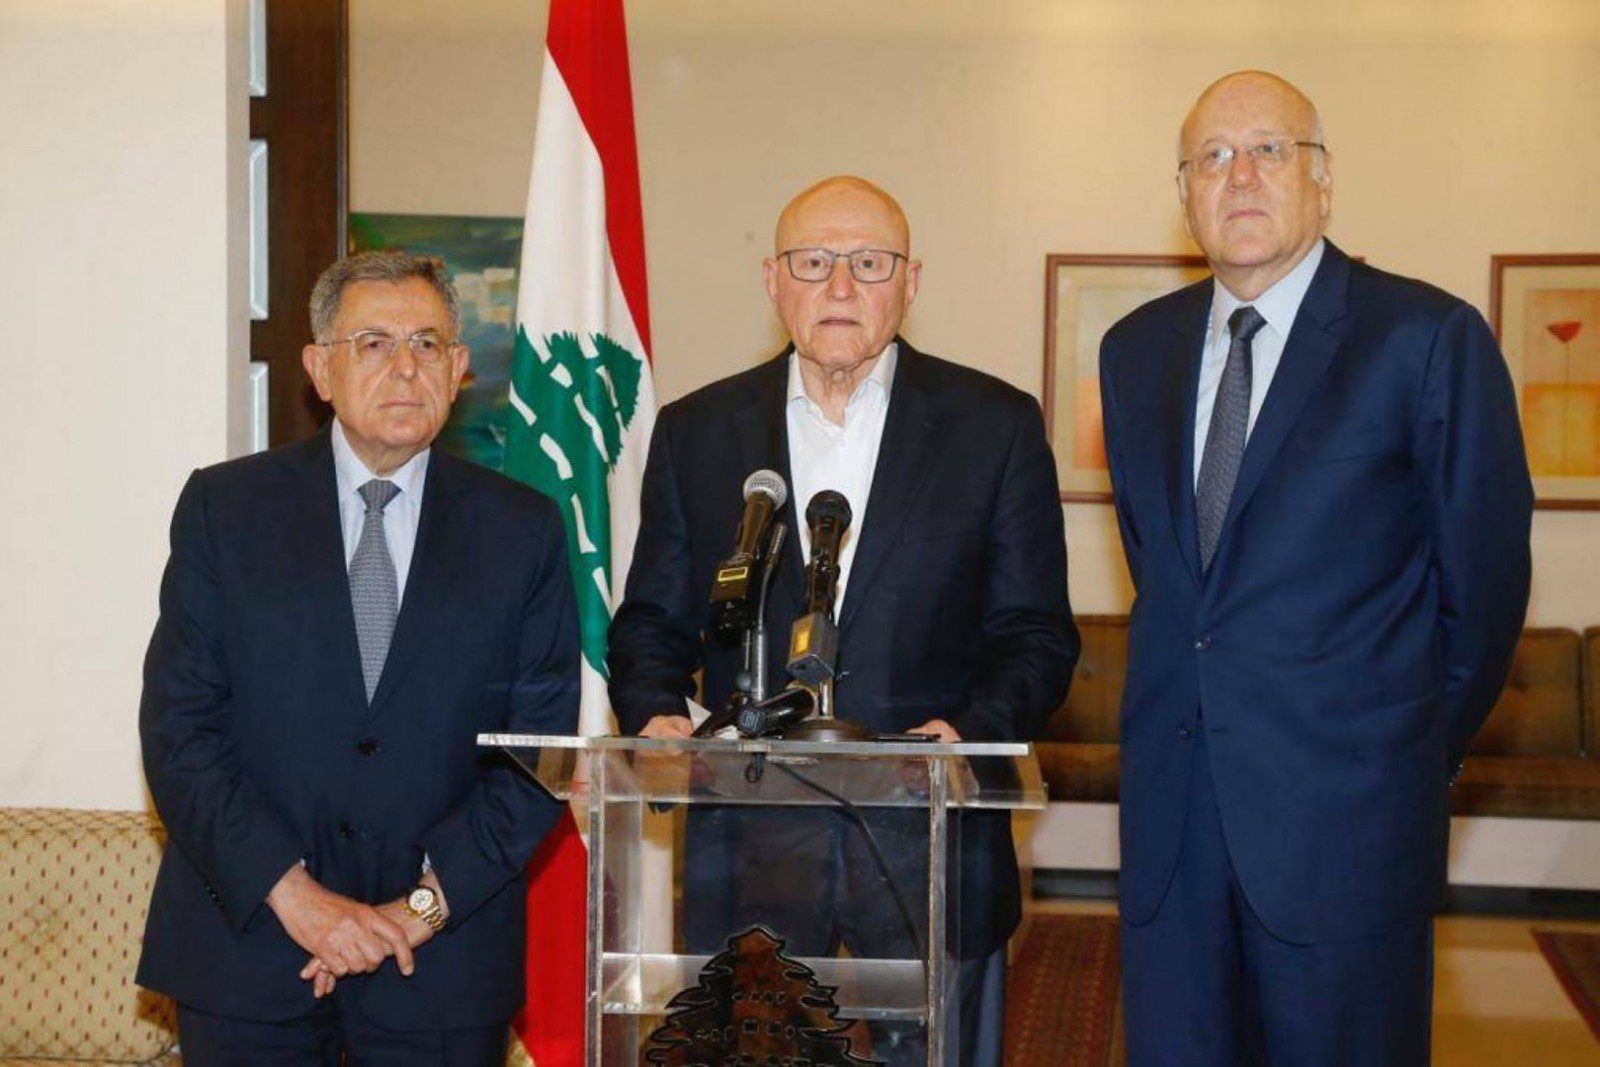 السنيورة: لا يمكن حل المشكلات واستعادة ثقة اللبنانيين من دون احترام الدستور